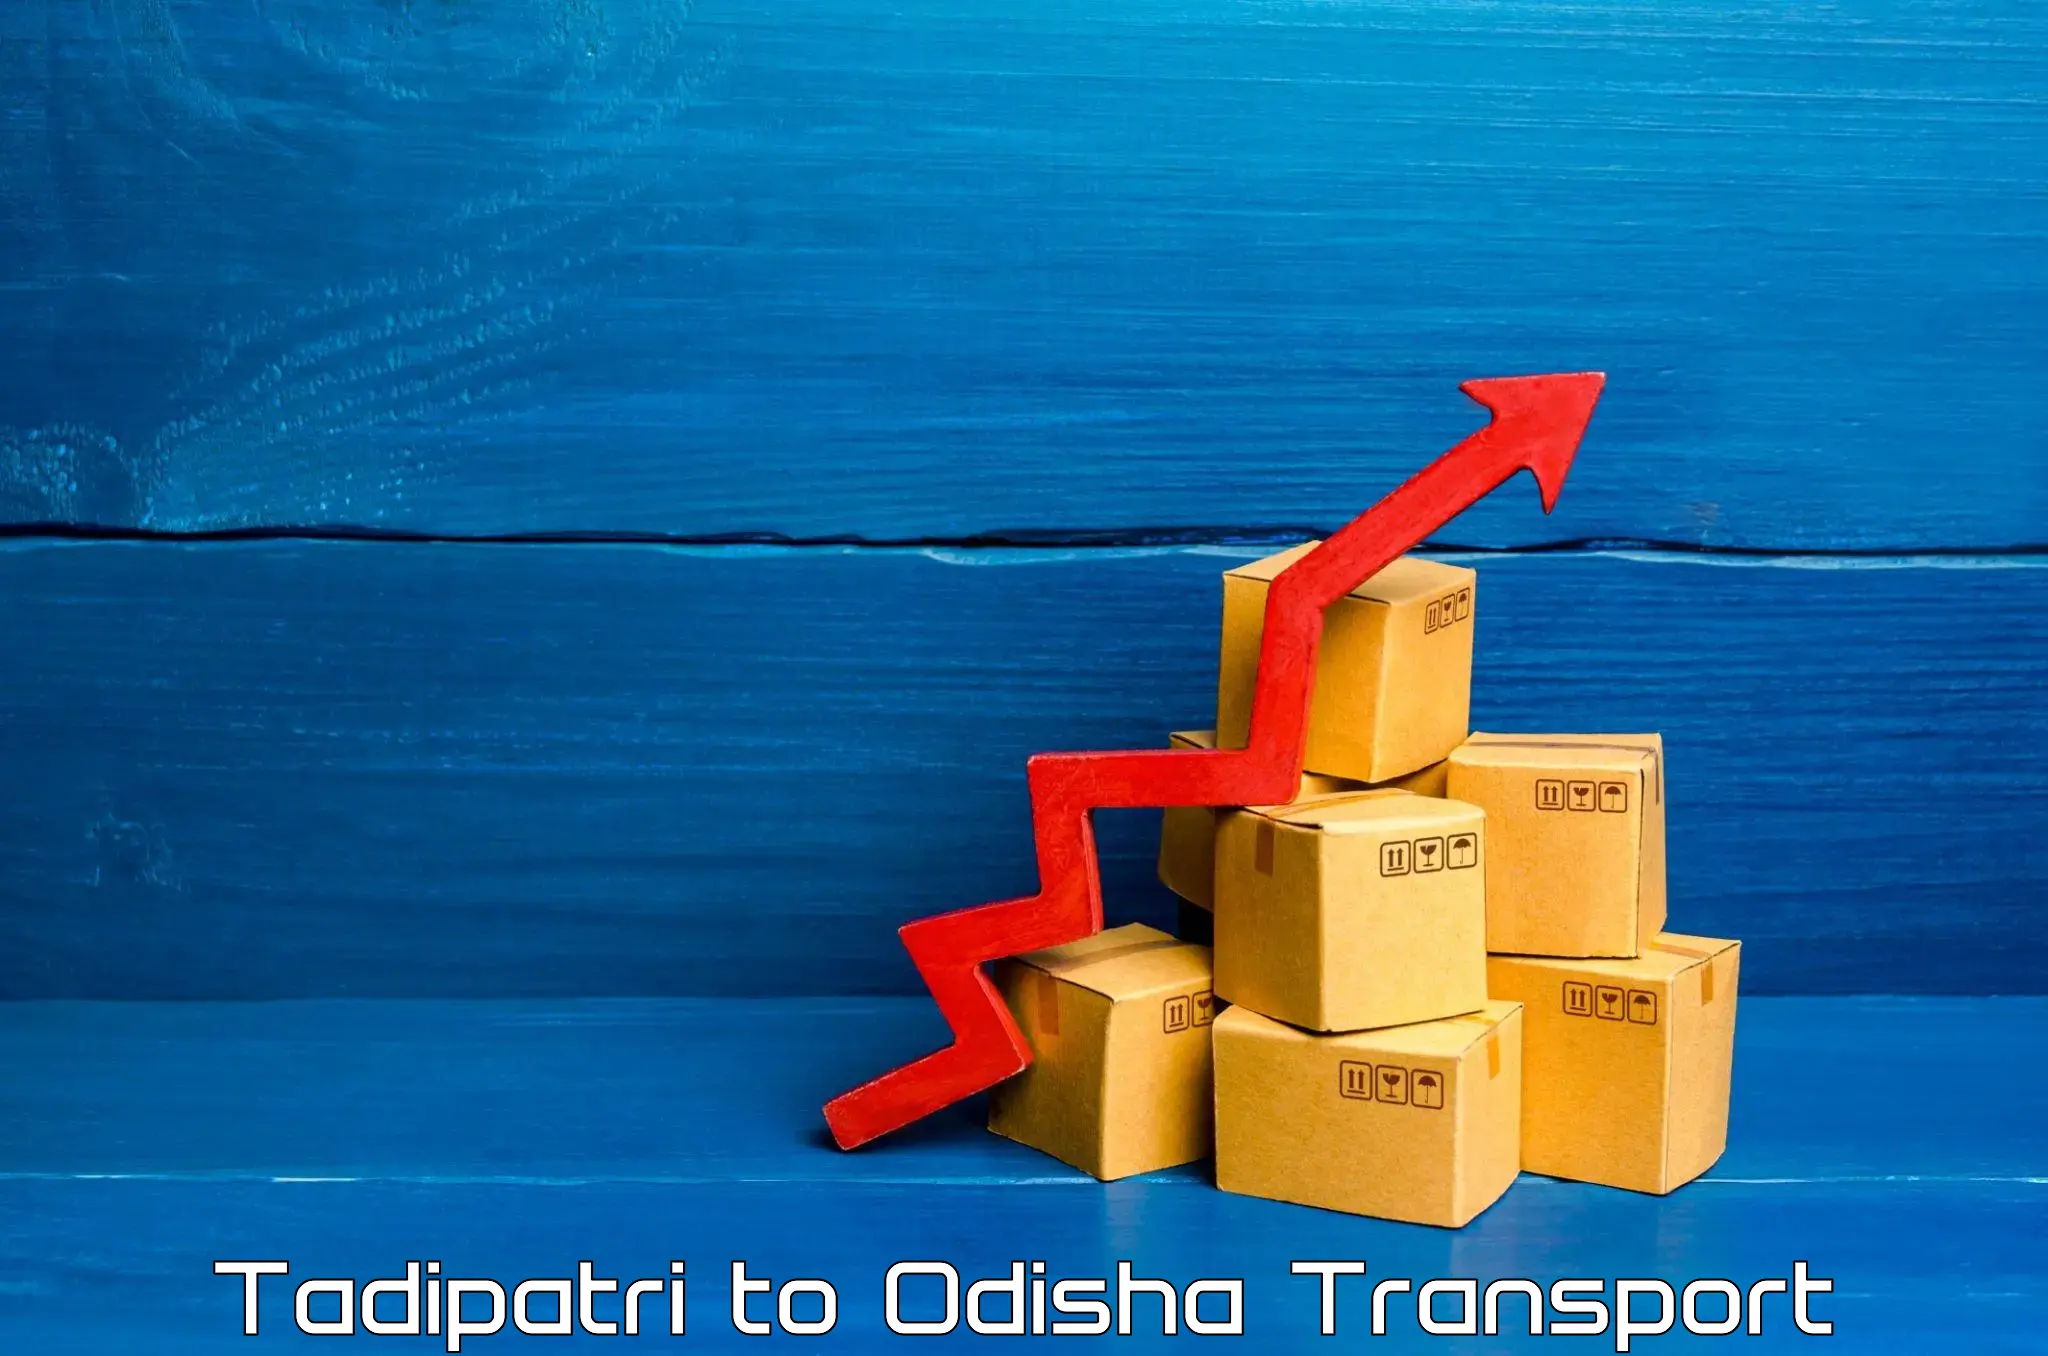 Transport in sharing Tadipatri to Baripada